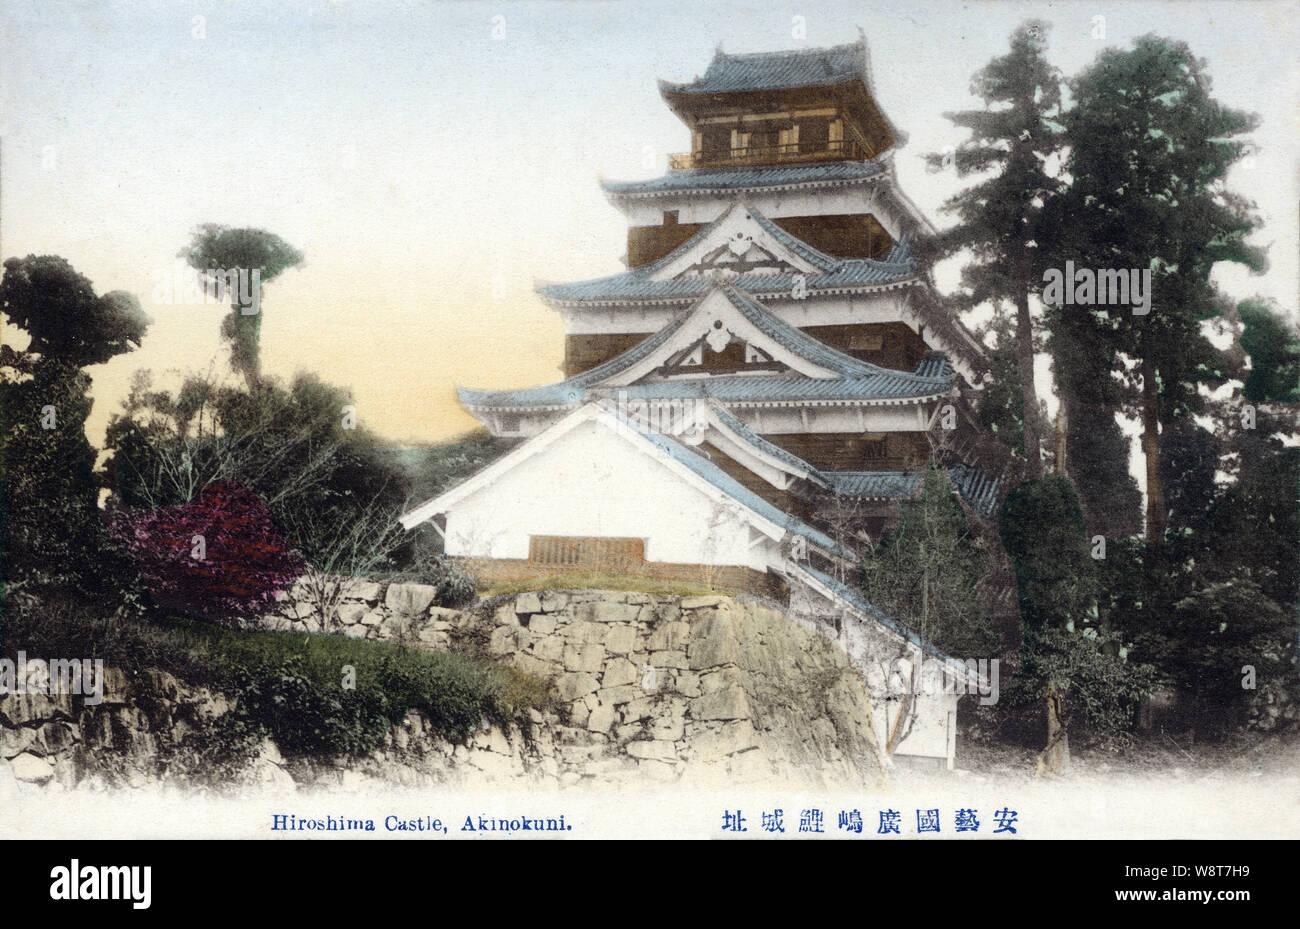 [1900s Japan - Hiroshima Castle] - Hiroshima Castle in Hiroshima. Hiroshima Castle wurde in den 1590 Jahren gebaut. Es war in der Atombombe 1945 zerstört und 1958 wieder aufgebaut. Das Replikat dient jetzt als Museum von Hiroshima die Geschichte vor dem Zweiten Weltkrieg. 20. jahrhundert alte Ansichtskarte. Stockfoto